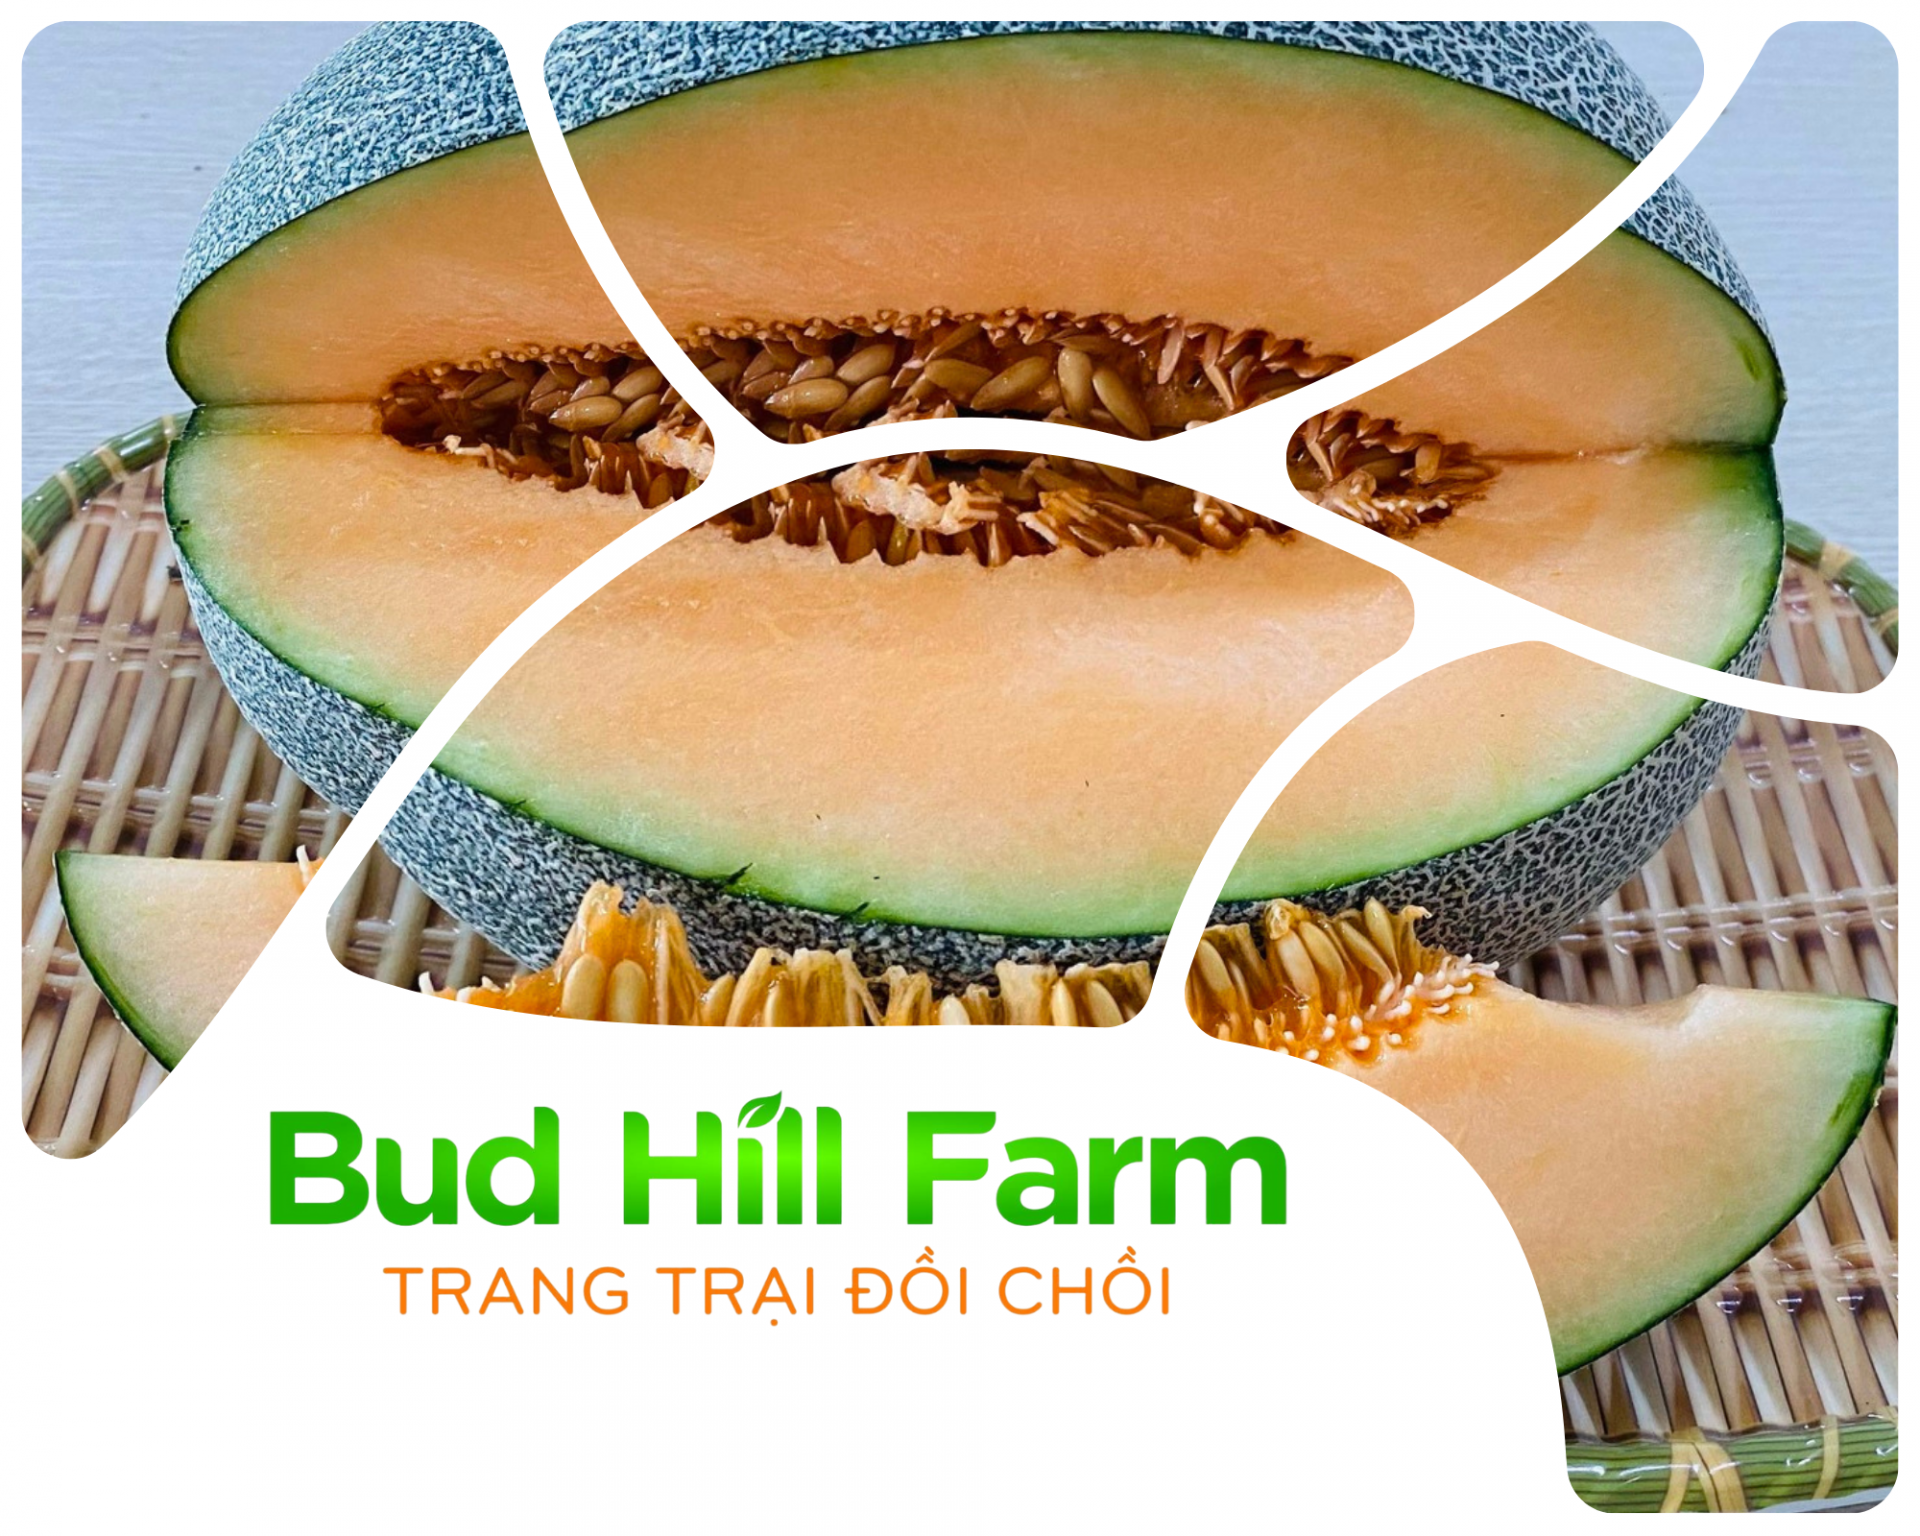 Trang trại Đồi Chồi Bud Hill Farm, xóm Yên Thế, xã Thịnh Sơn, huyện Đô Lương (tỉnh Nghệ An).